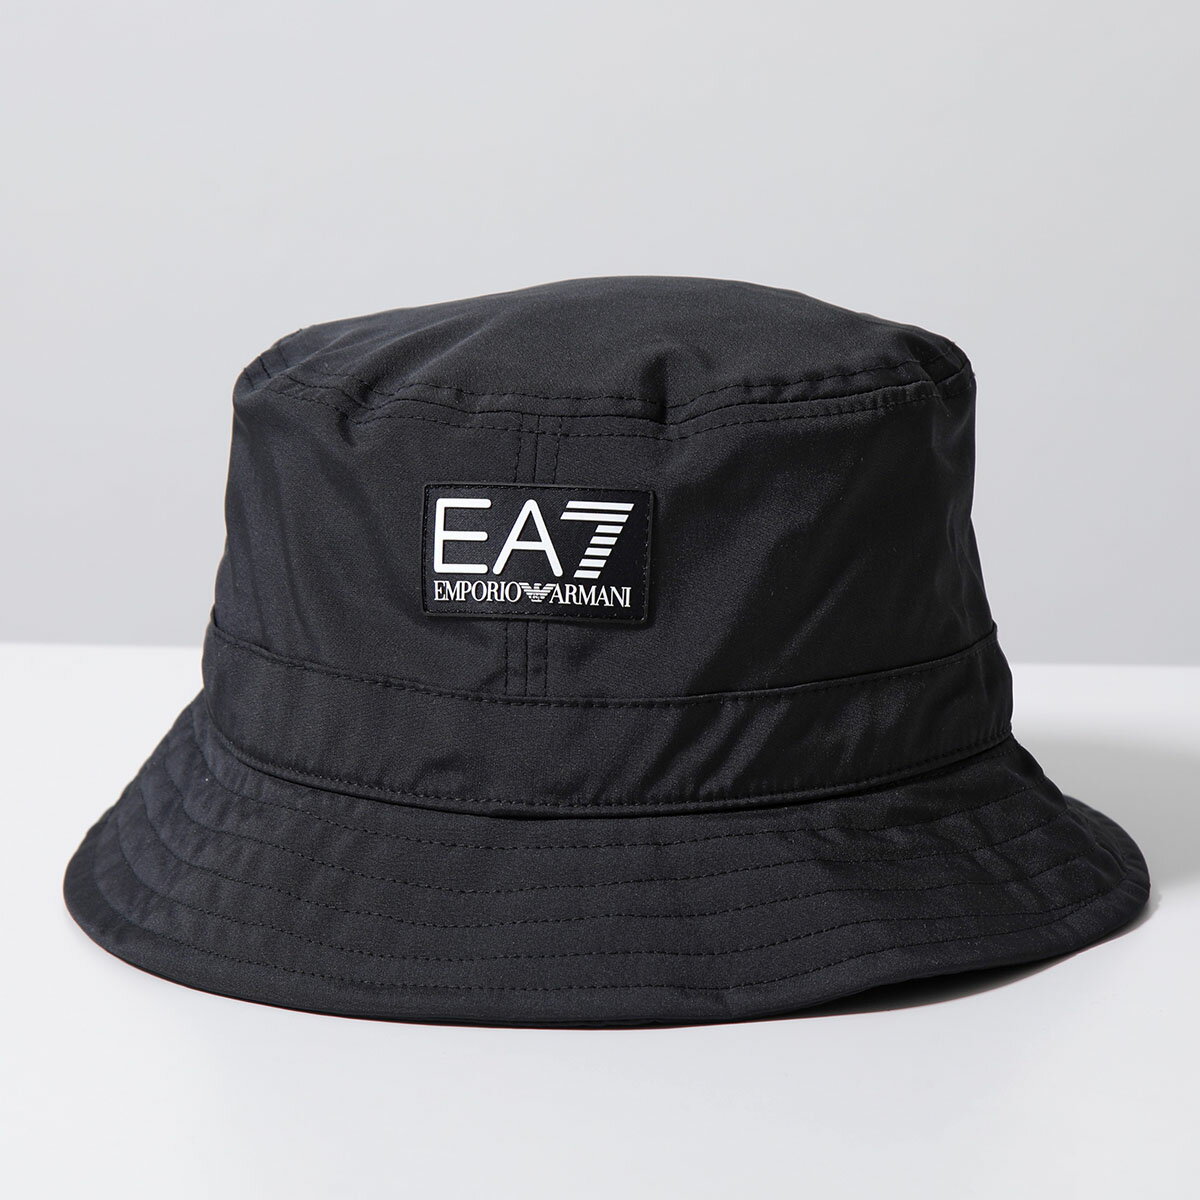 EA7 EMPORIO ARMANI エアセッテ エンポリオアルマーニ バケットハット 240141 4R101 メンズ ラバーロゴ 帽子 00020/BLACK